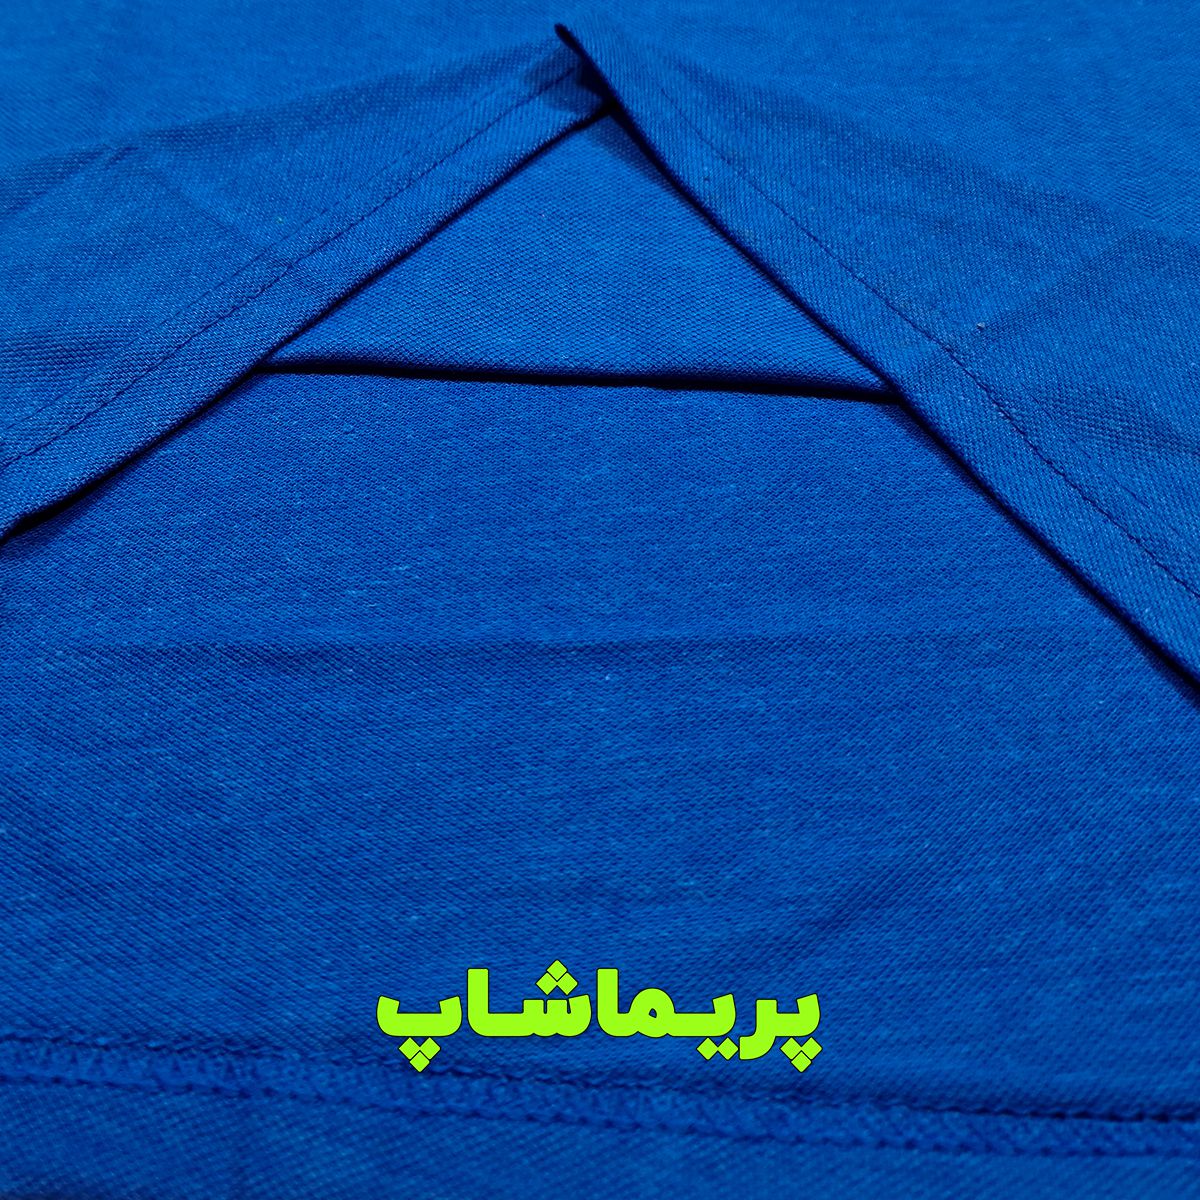 پولوشرت  استقلال آبی با پارچه جودون سوزنی و تک رنگ